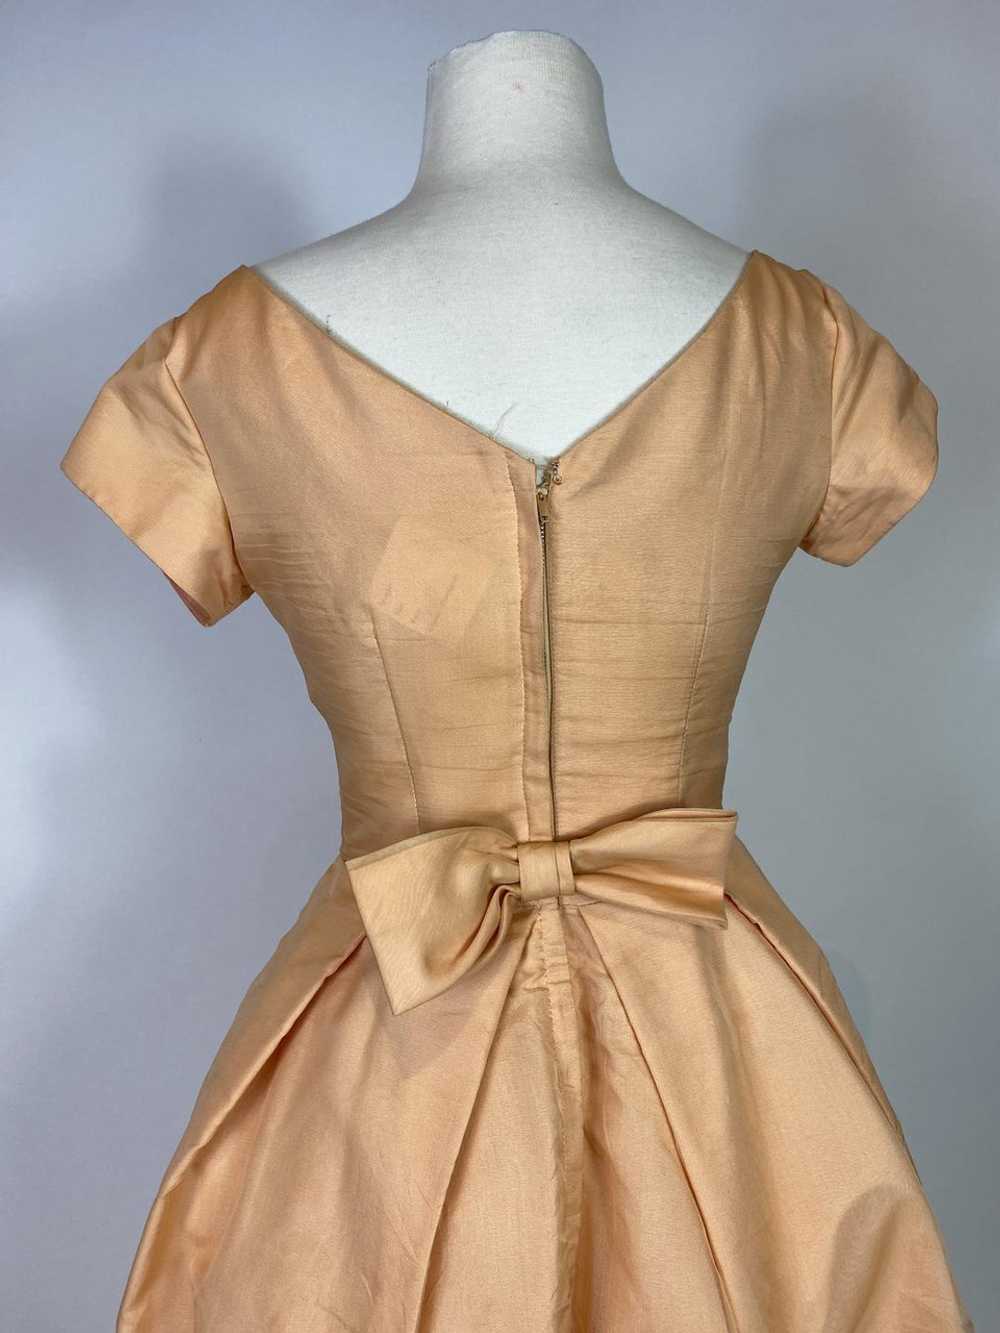 1950s Peach Floral Applique Dress - image 7